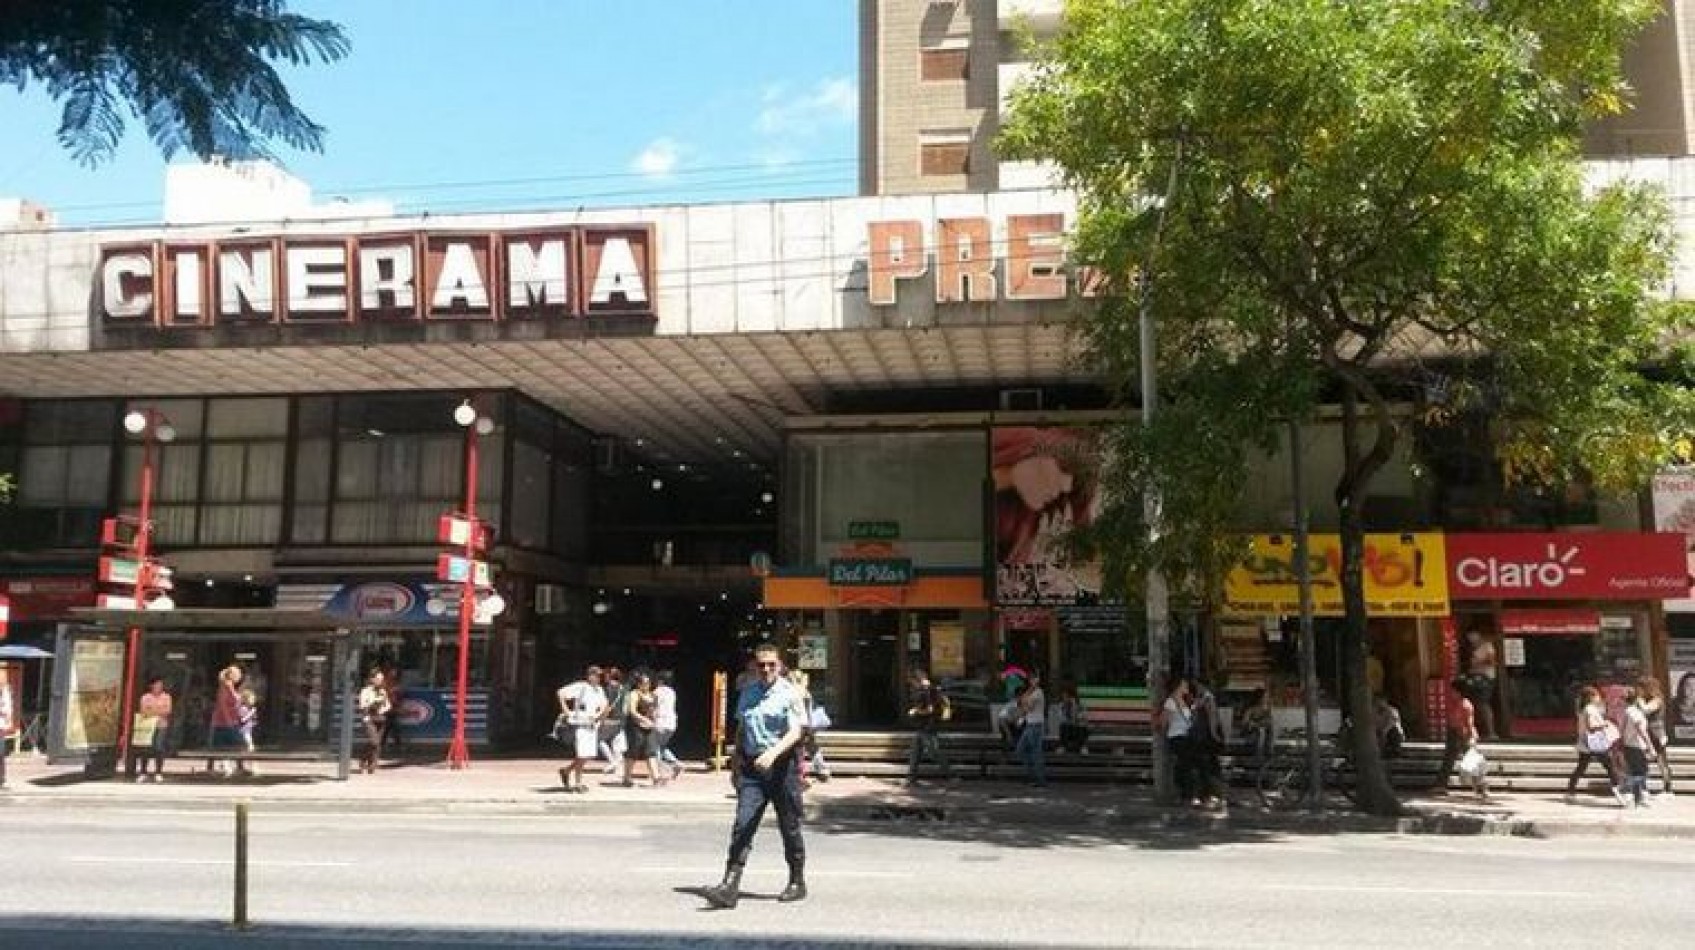 Vendo 2 locales comerciales en galeria Cinerama - Colon 377